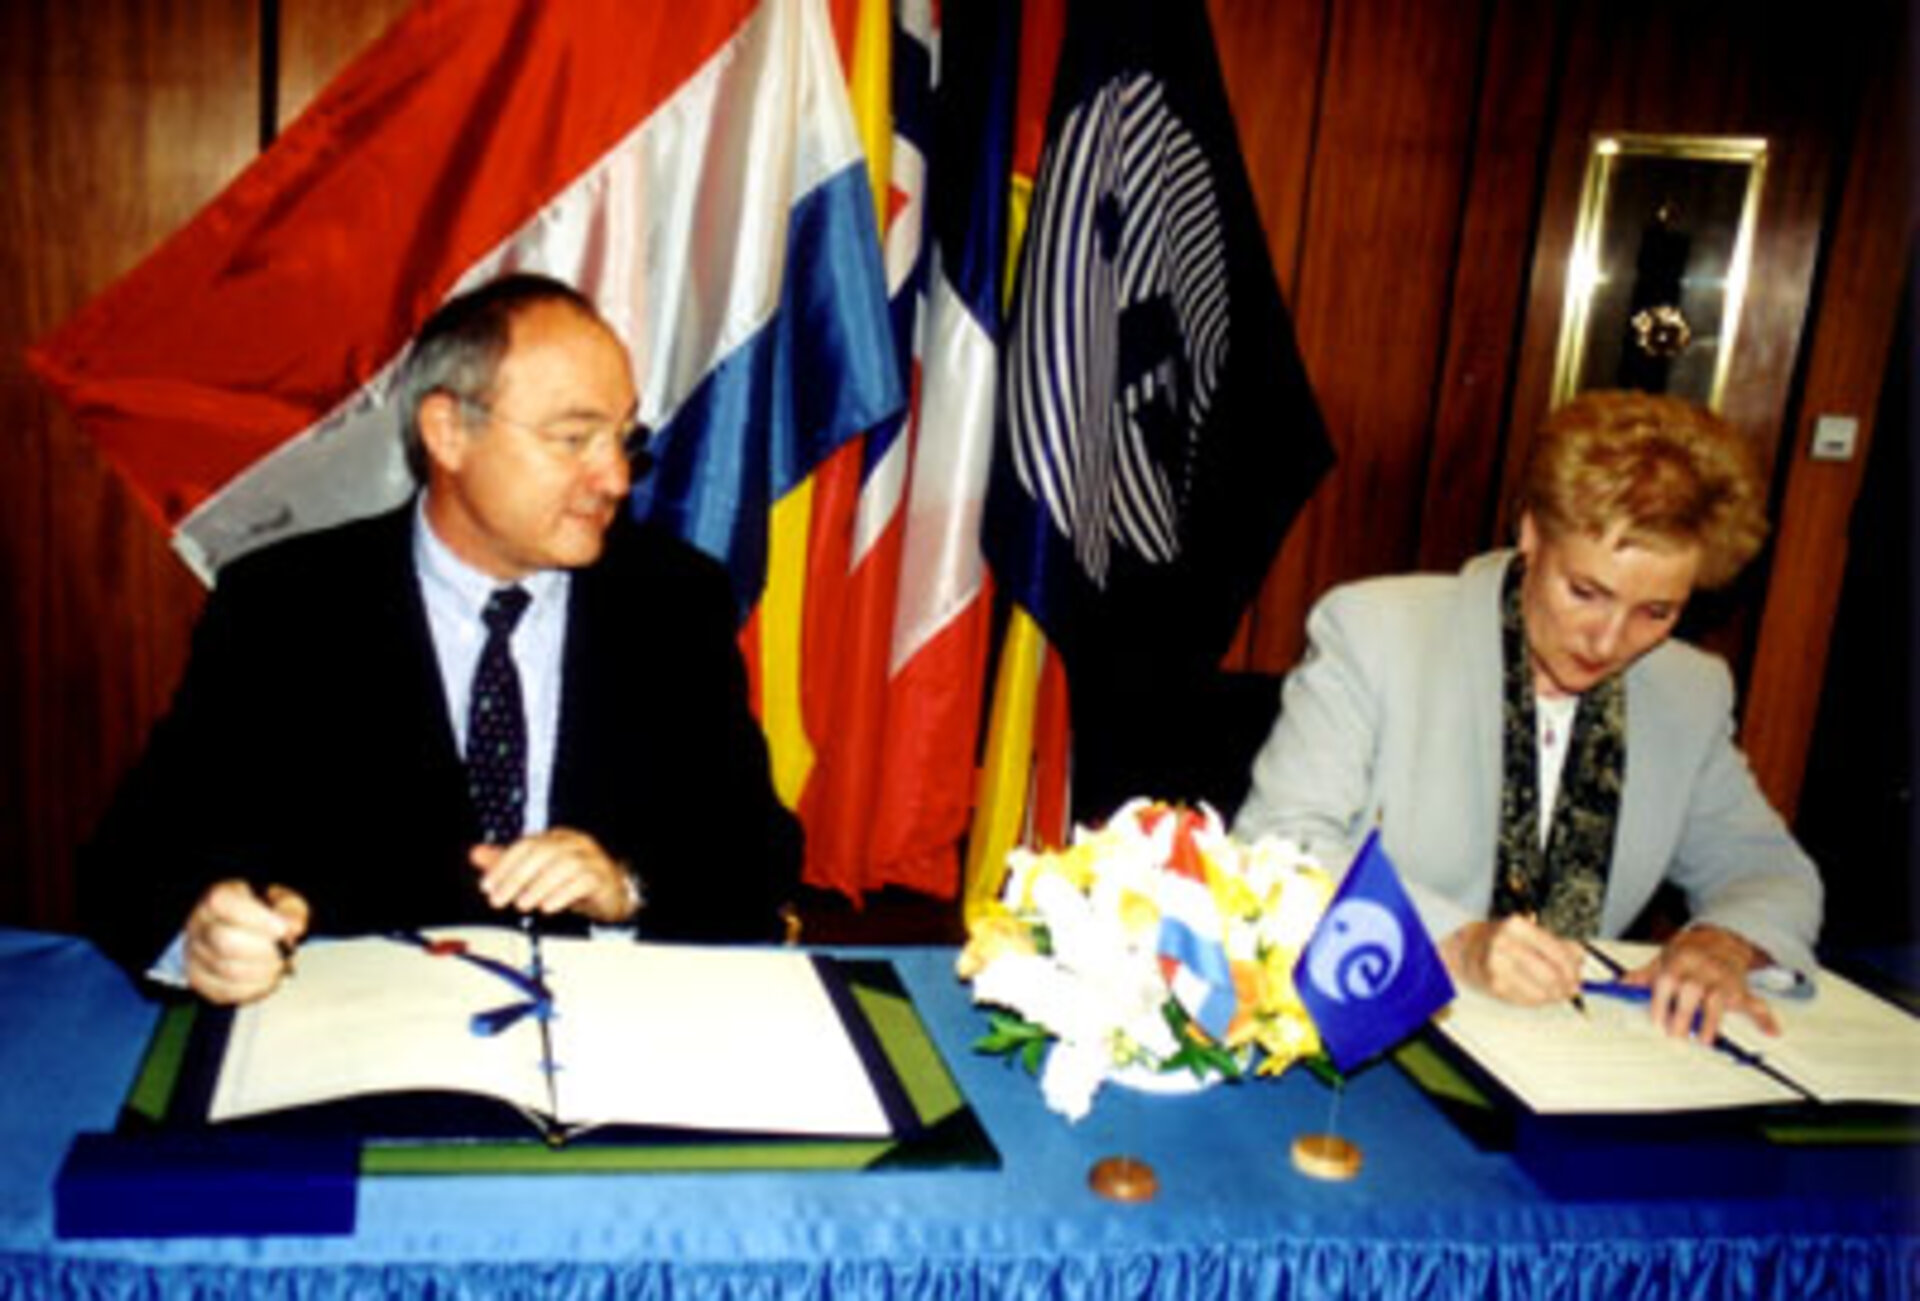 Le 6 mai, signature de l'acte d'adhésion du Grand-Duché à la Convention de l'ESA